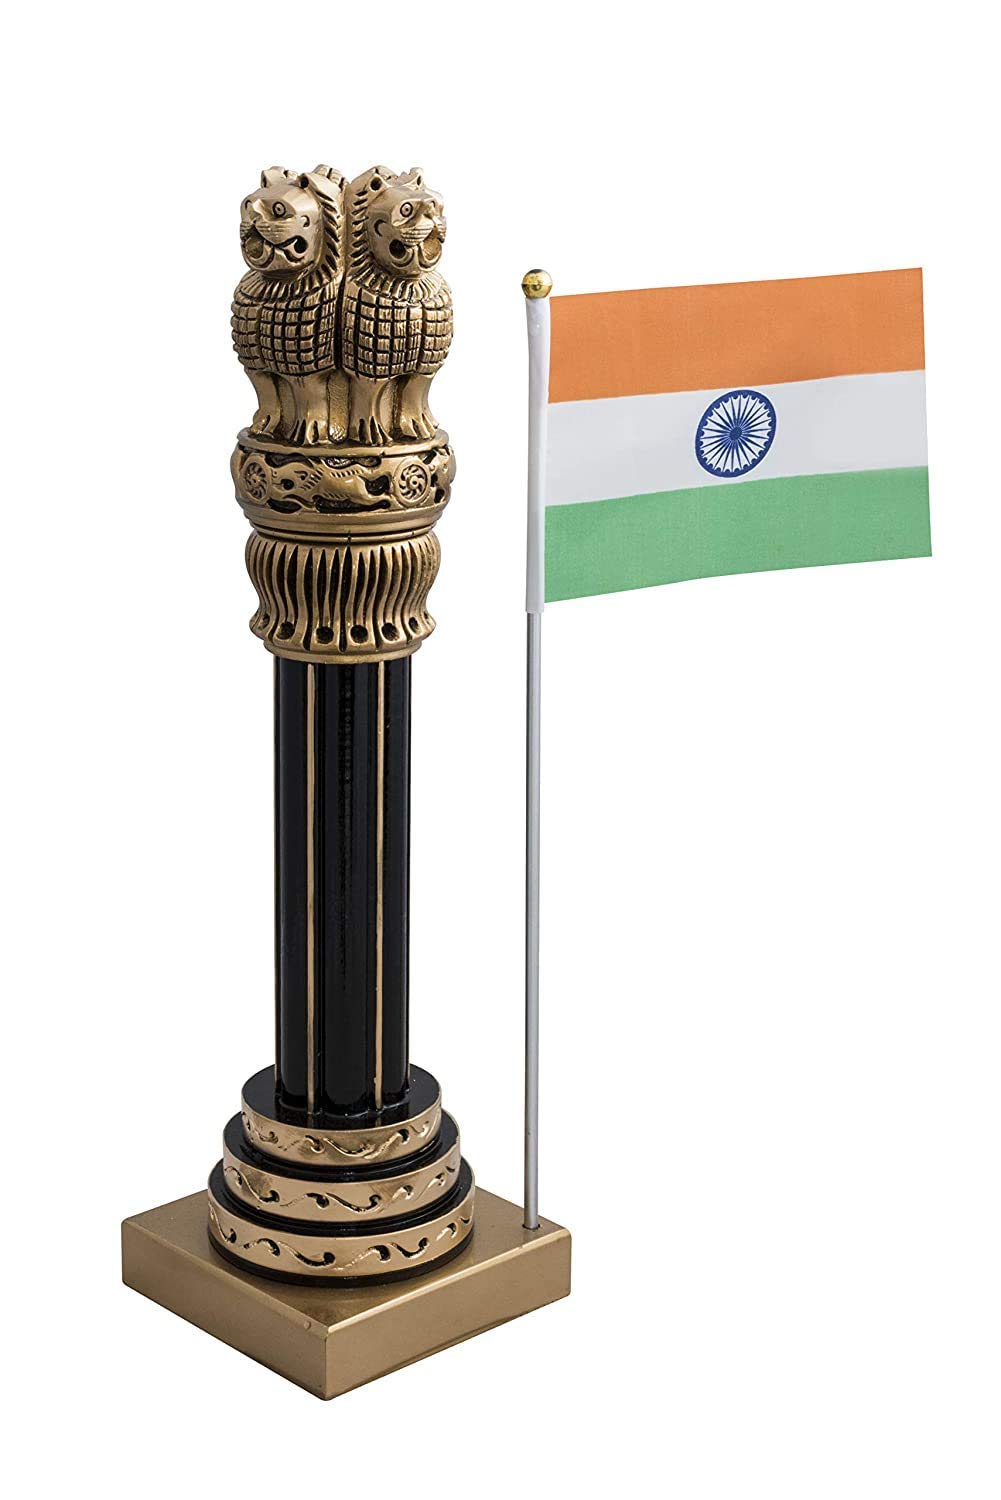 B H A R A T H A A T ashok stambh Decorative Showpiece - 36 cm Price in  India - Buy B H A R A T H A A T ashok stambh Decorative Showpiece - 36 cm  online at Flipkart.com